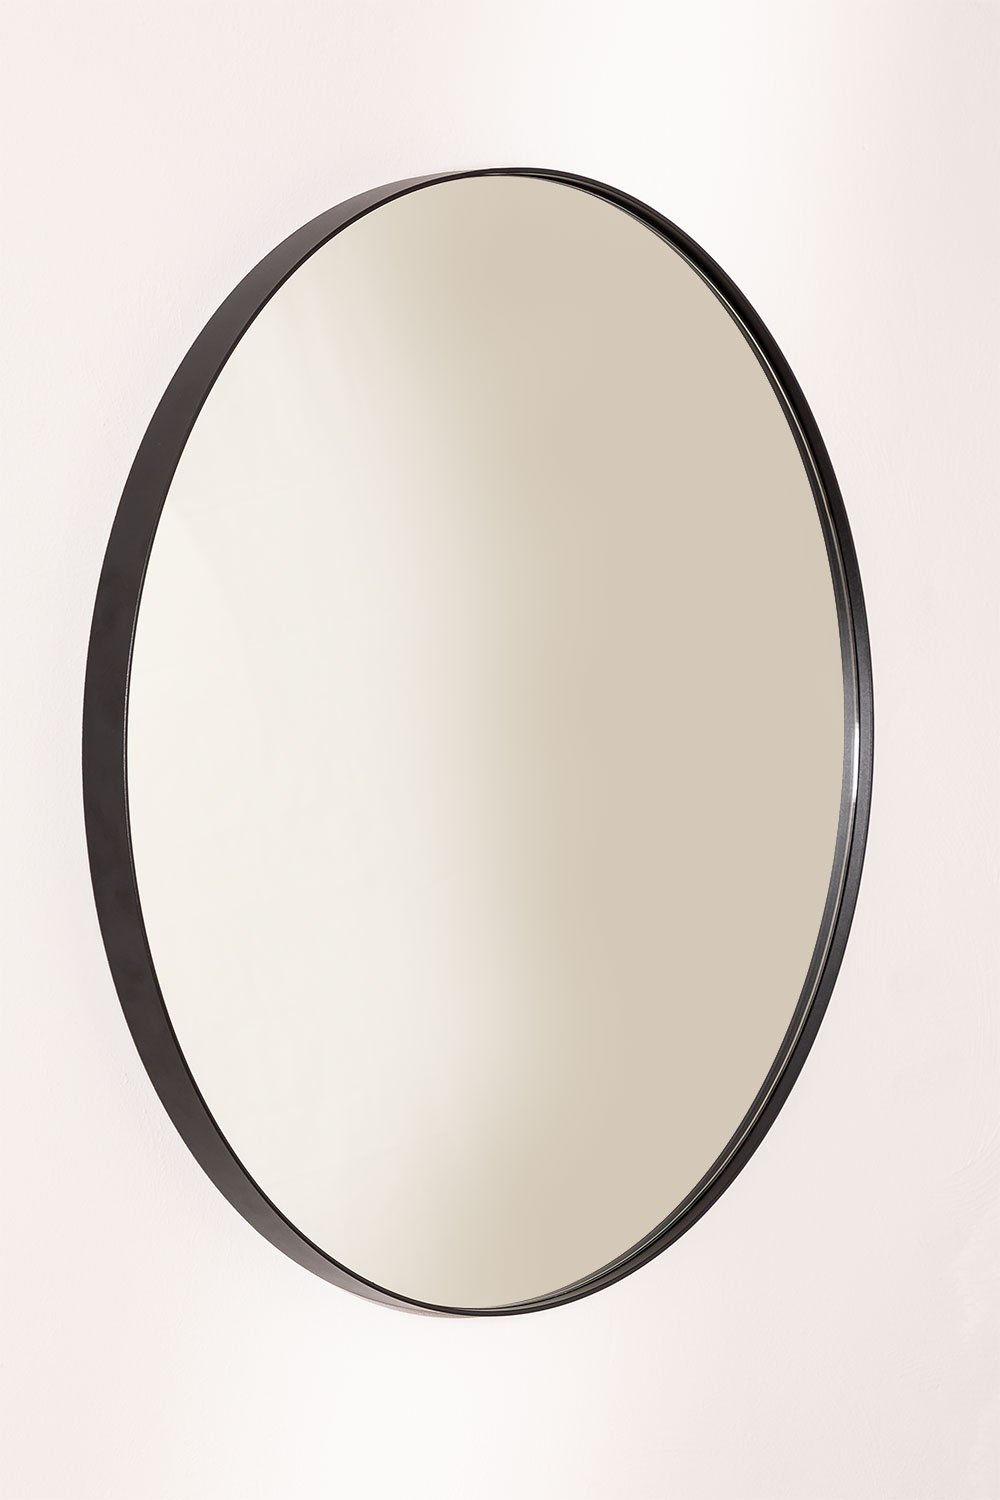 Ronde metalen badkamerwandspiegel (Ø60,5 cm) Gon, galerij beeld 1